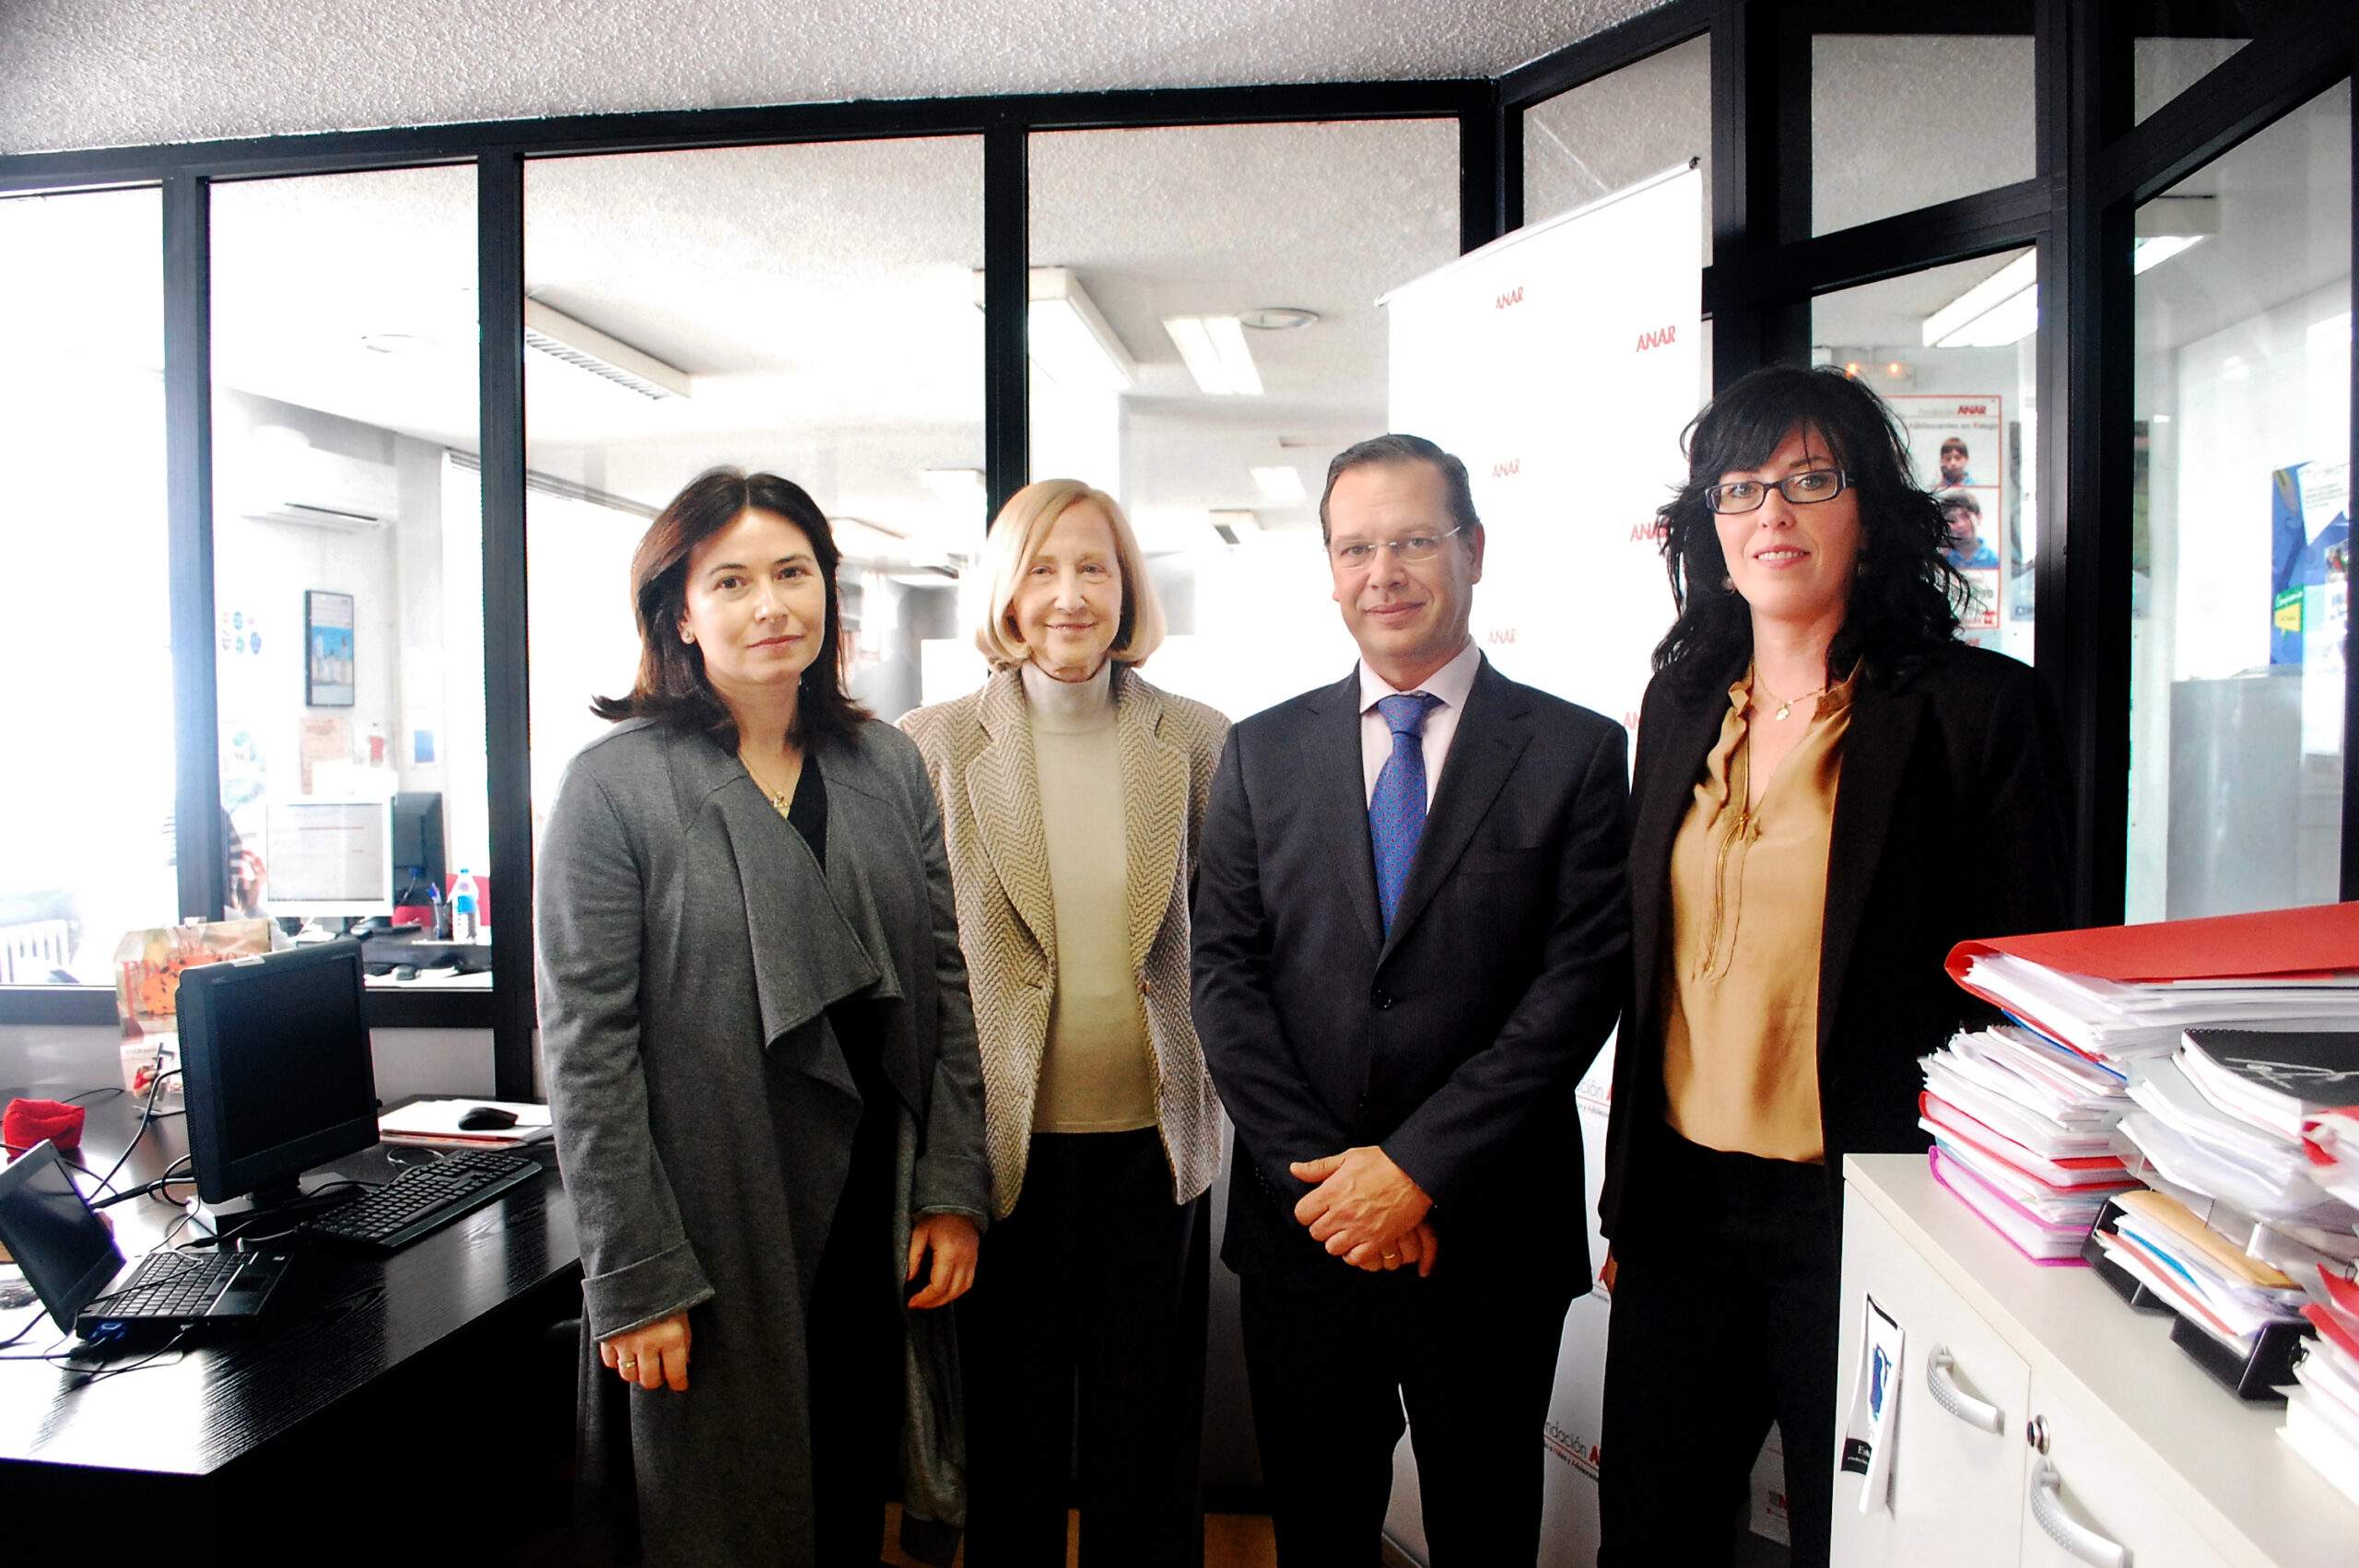 La viceconsejera de Políticas Sociales y Familia de la Comunidad de Madrid visita ANAR